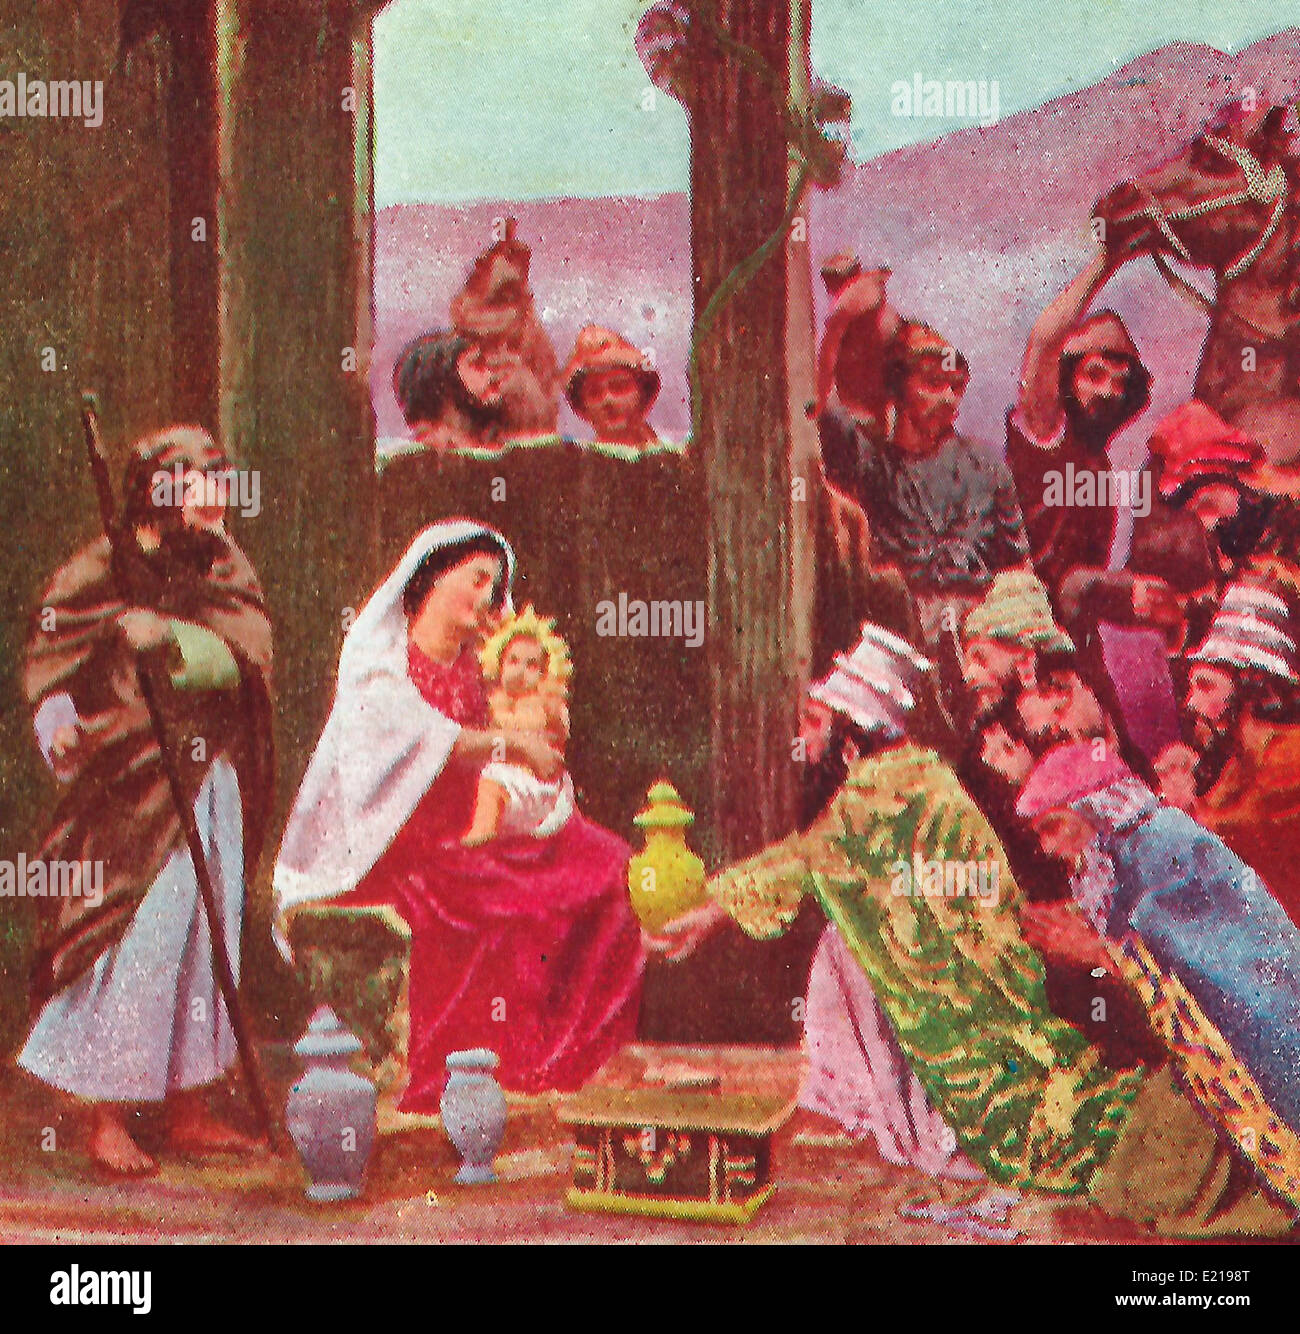 Adoration des Mages - le cadeau des Rois mages - Trois Sages présentant des cadeaux à l'enfant Jésus Banque D'Images